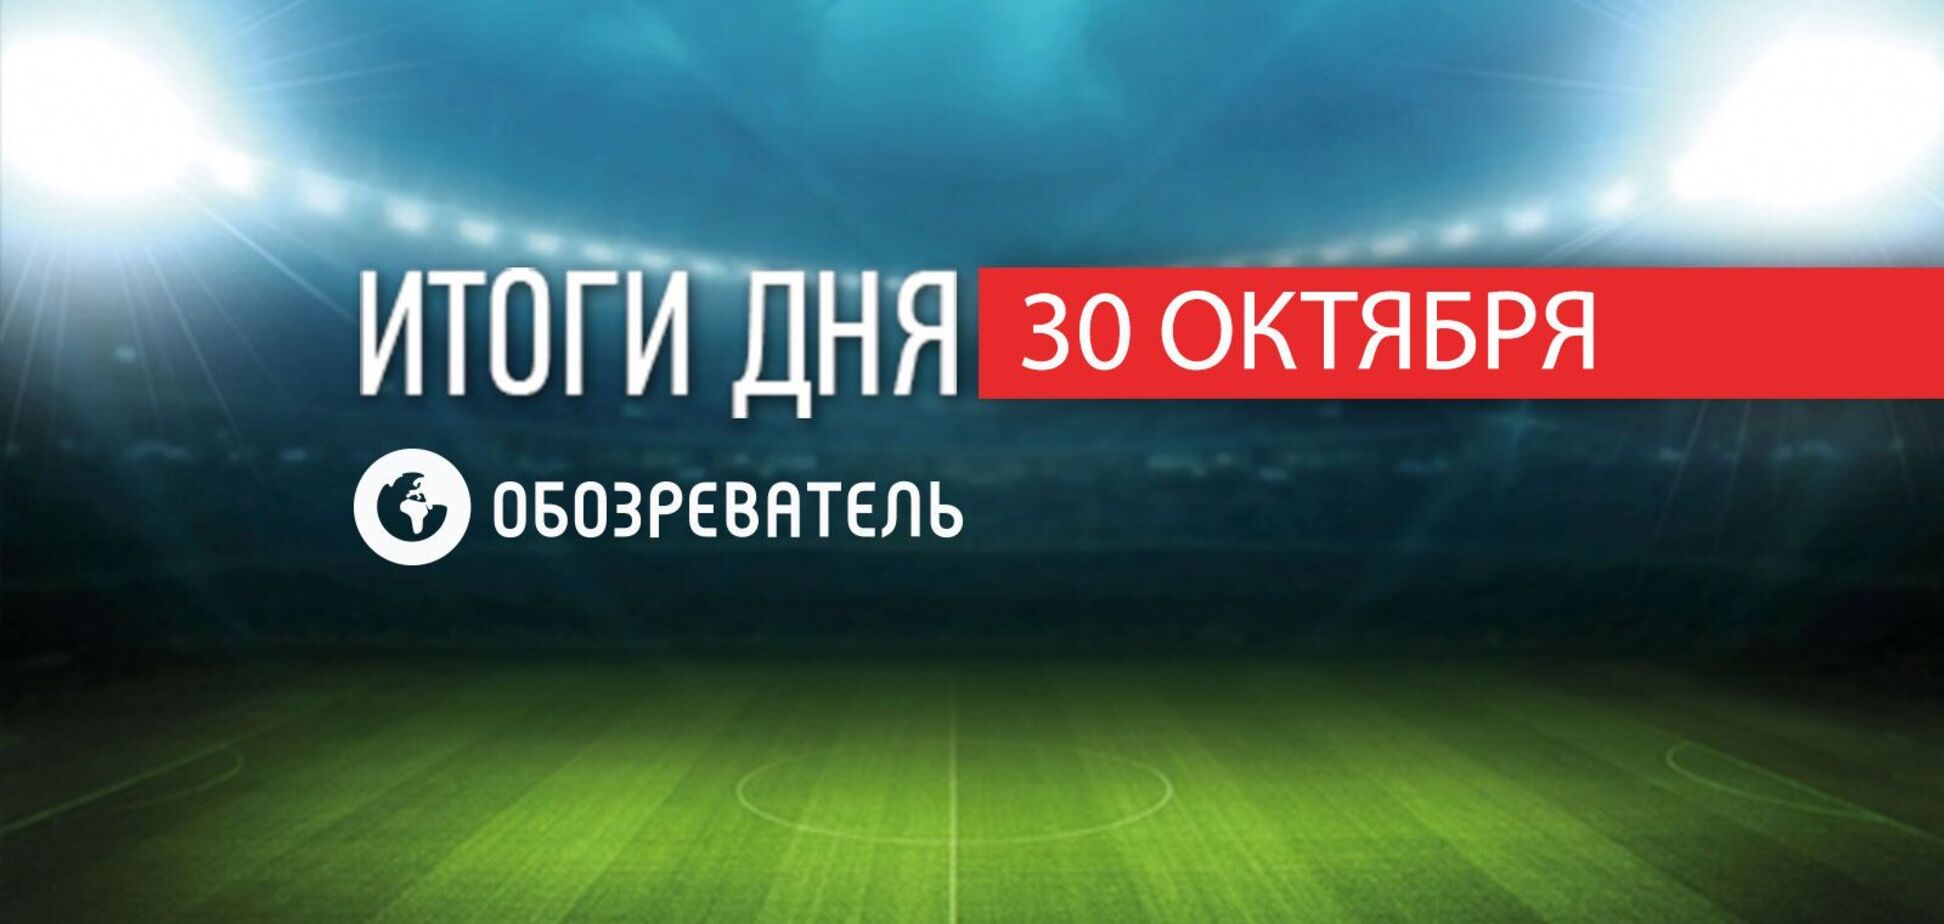 В Украине случился редкий футбольный курьез: спортивные итоги 30 октября